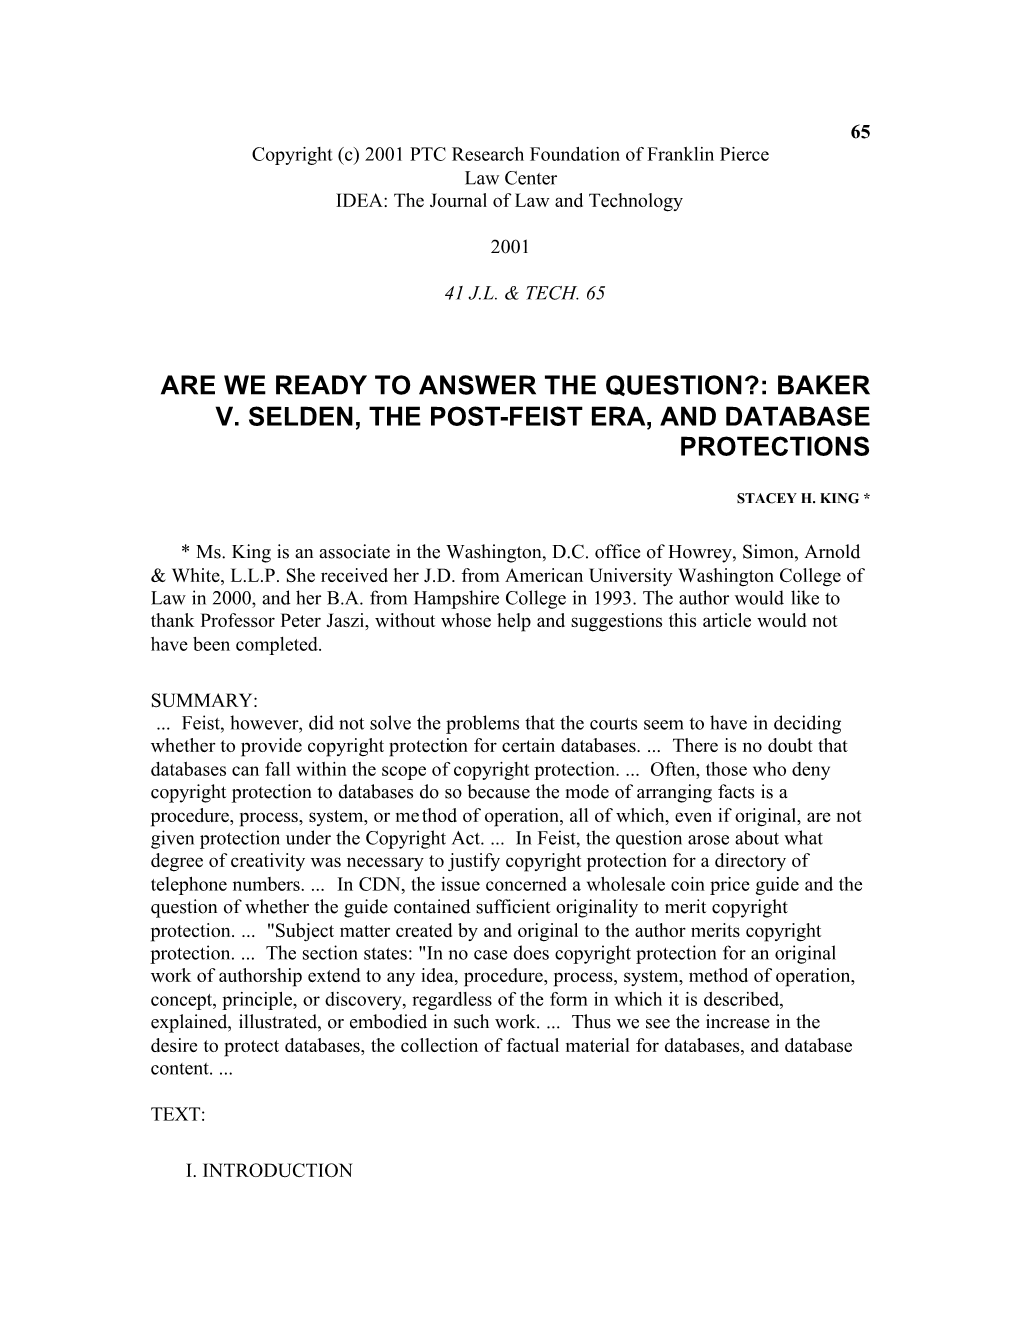 Baker V. Selden, the Post-Feist Era, and Database Protections